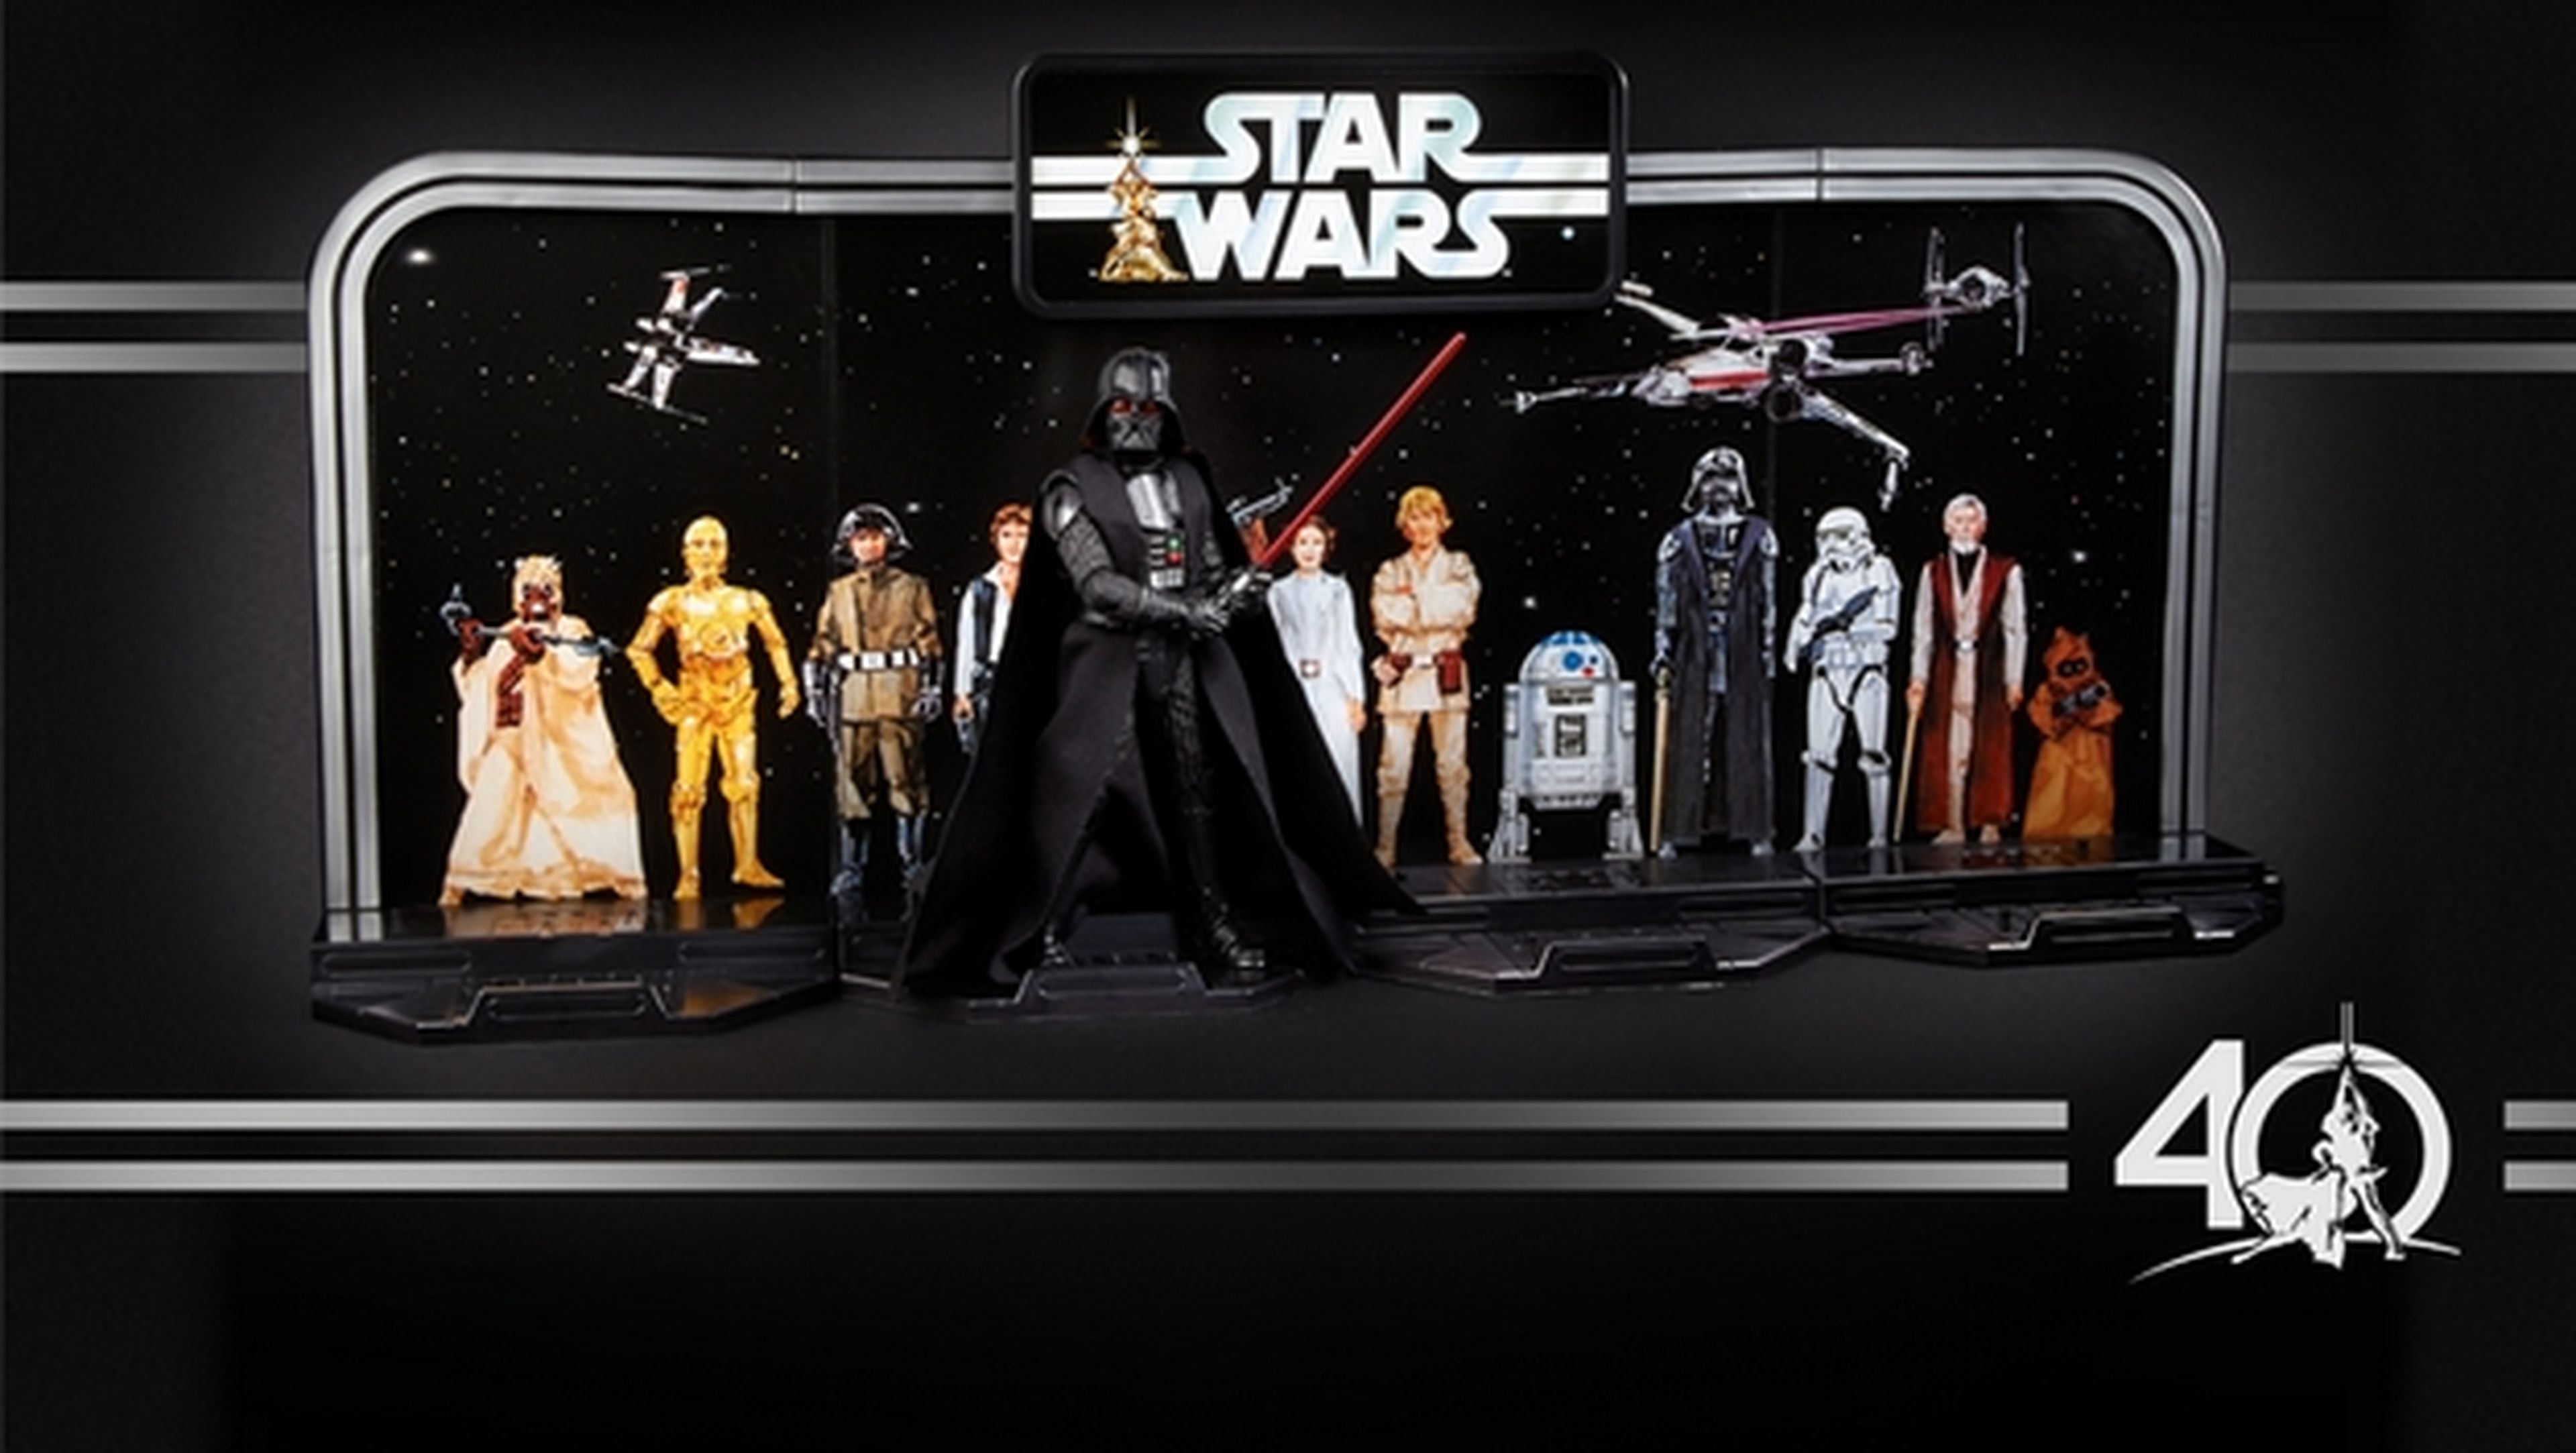 Desgracia Embrión Miniatura 40 Aniversario de Star Wars, Hasbro presenta las figuras | Computer Hoy